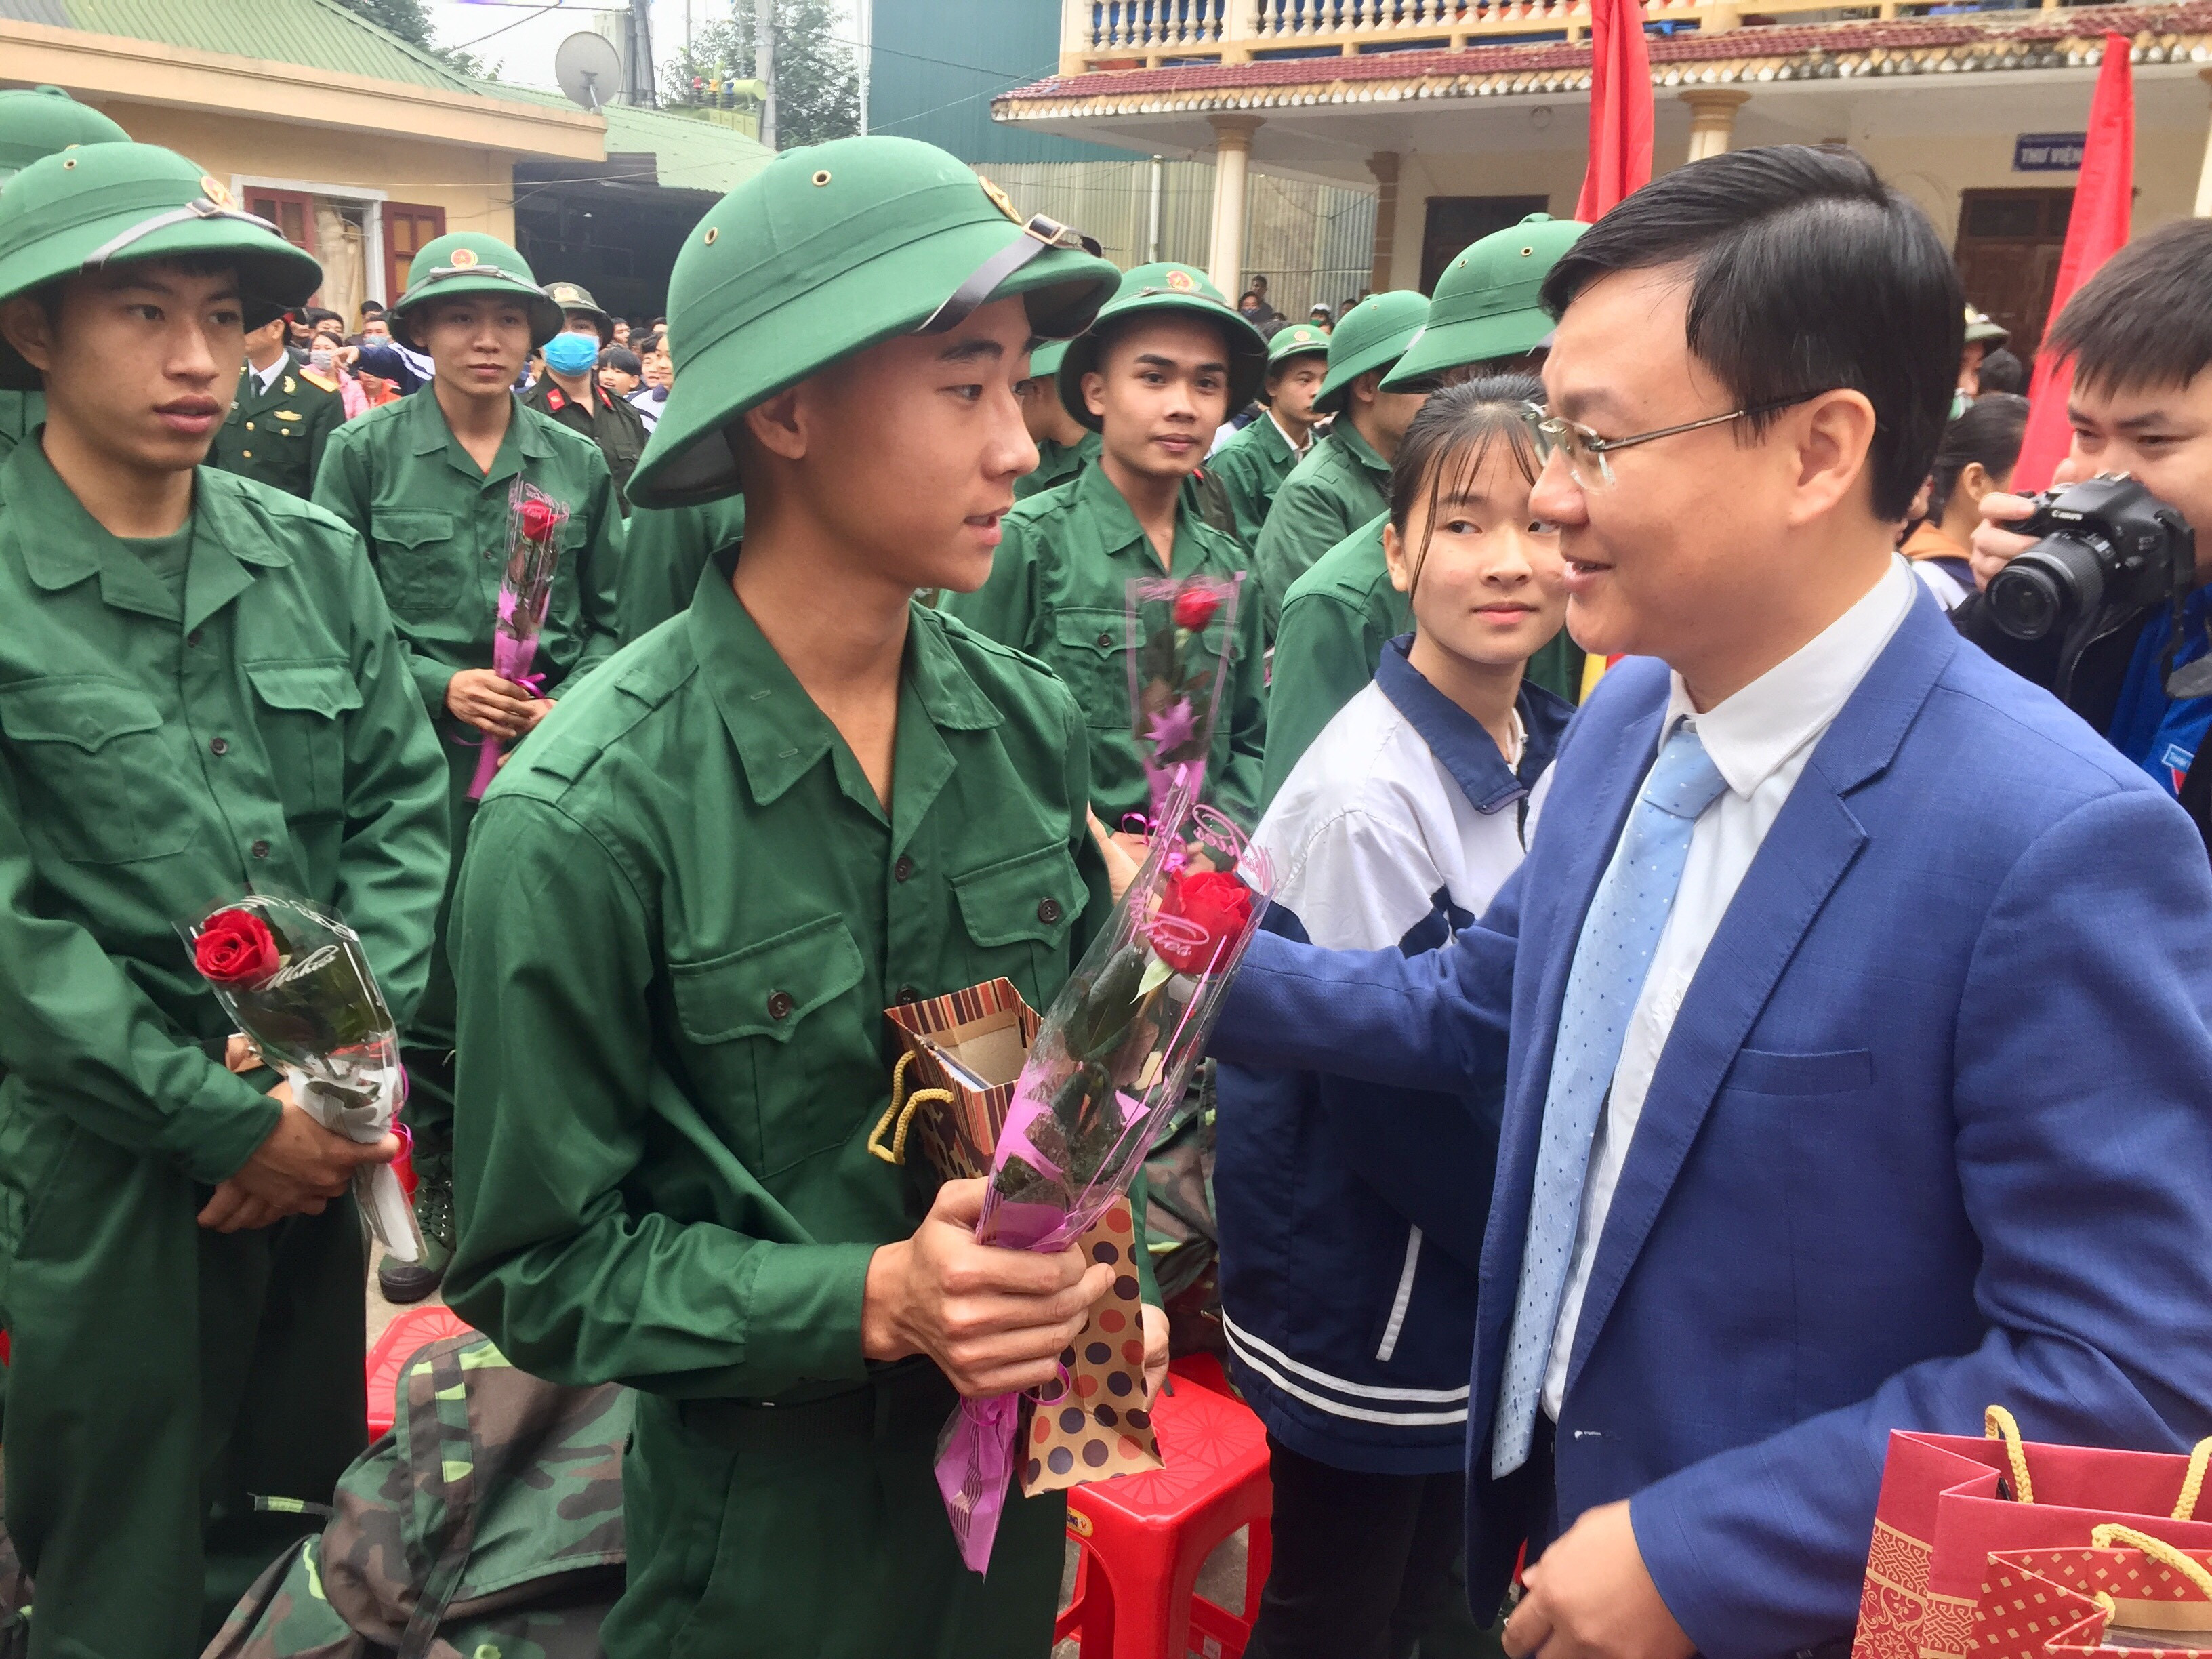 Công tác tuyển quân năm 2020 của thị xã Thái Hòa được đánh giá là triển khai tốt ngay từ ban đầu với sự vào cuộc đồng bộ, quyết liệt của cấp ủy Đảng, chính quyền